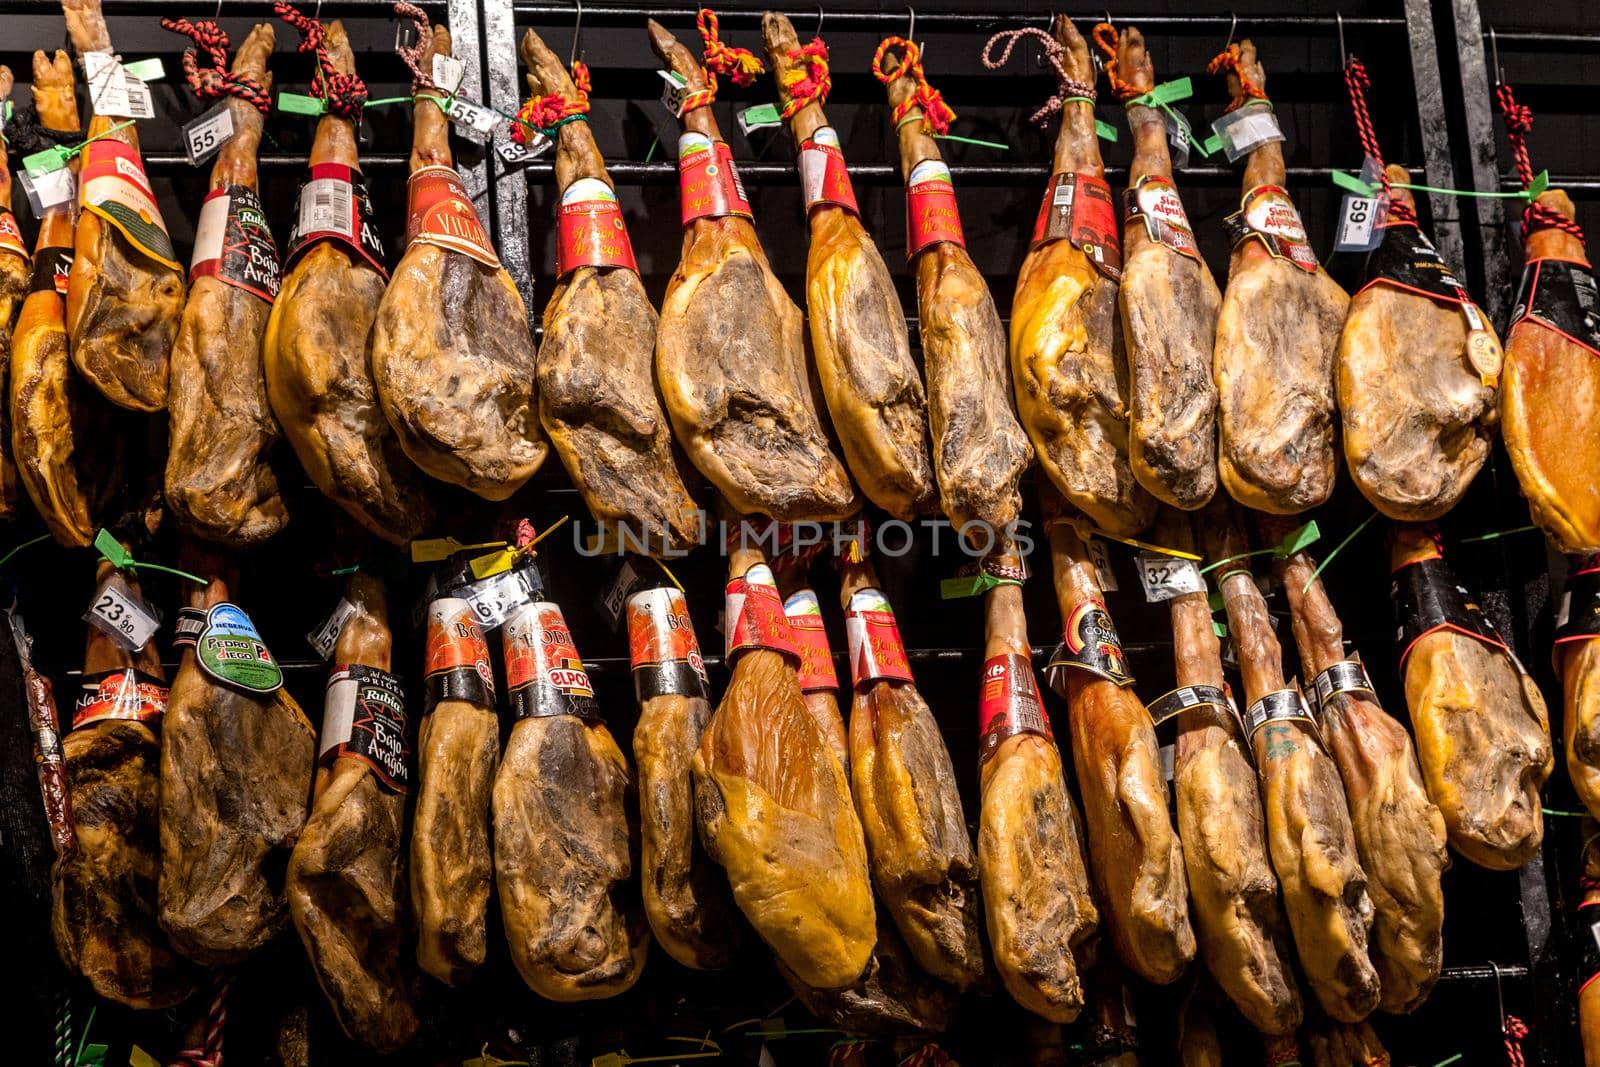 SANTIAGO DE COMPOSTELA, SPAIN - MAY 01, 2015 - Cured jamon in a shop